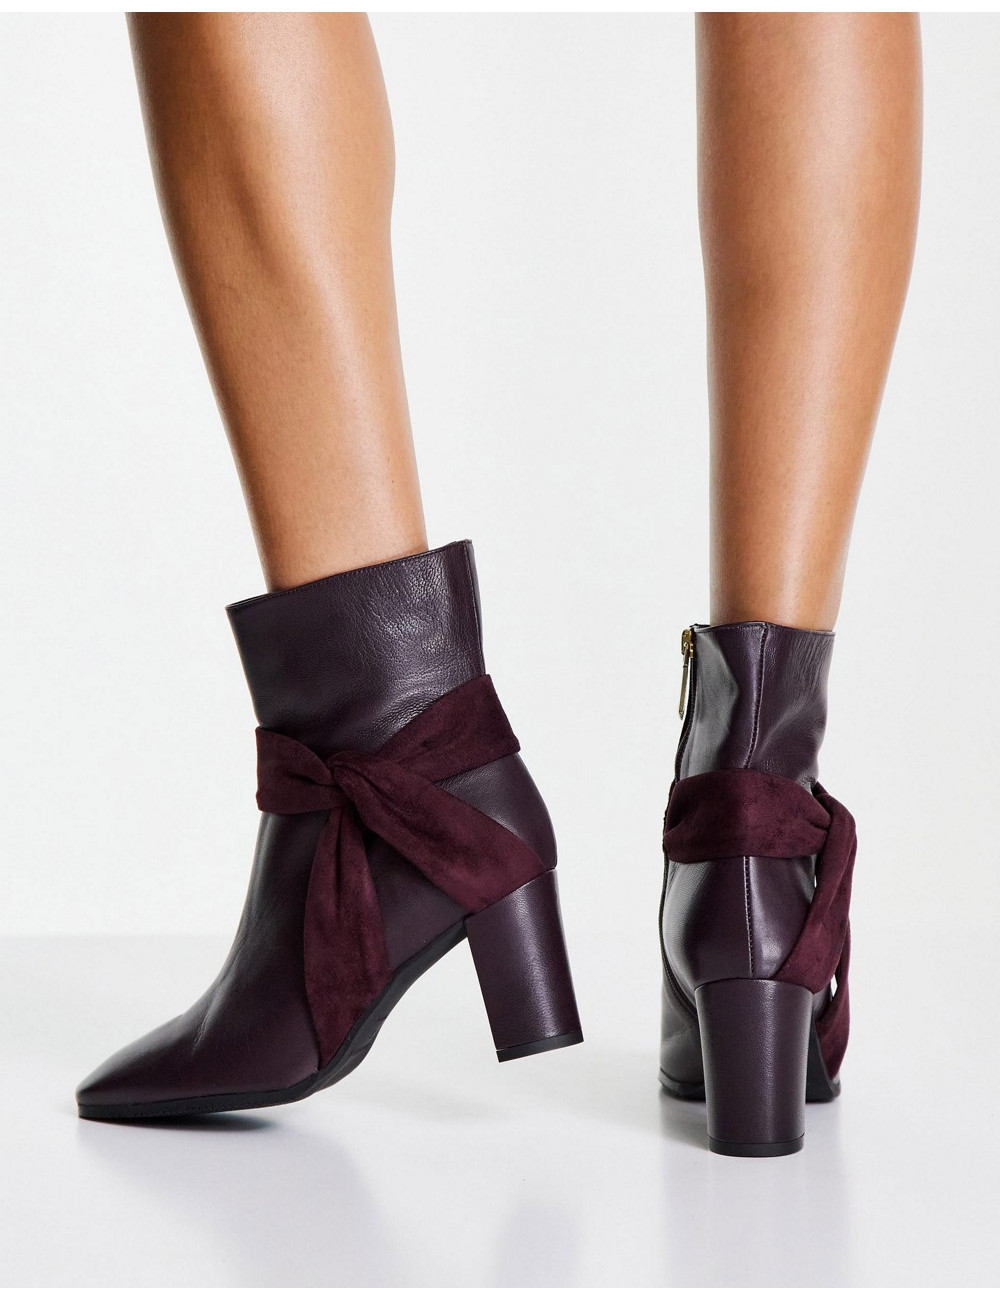 Karen Millen heeled boots...